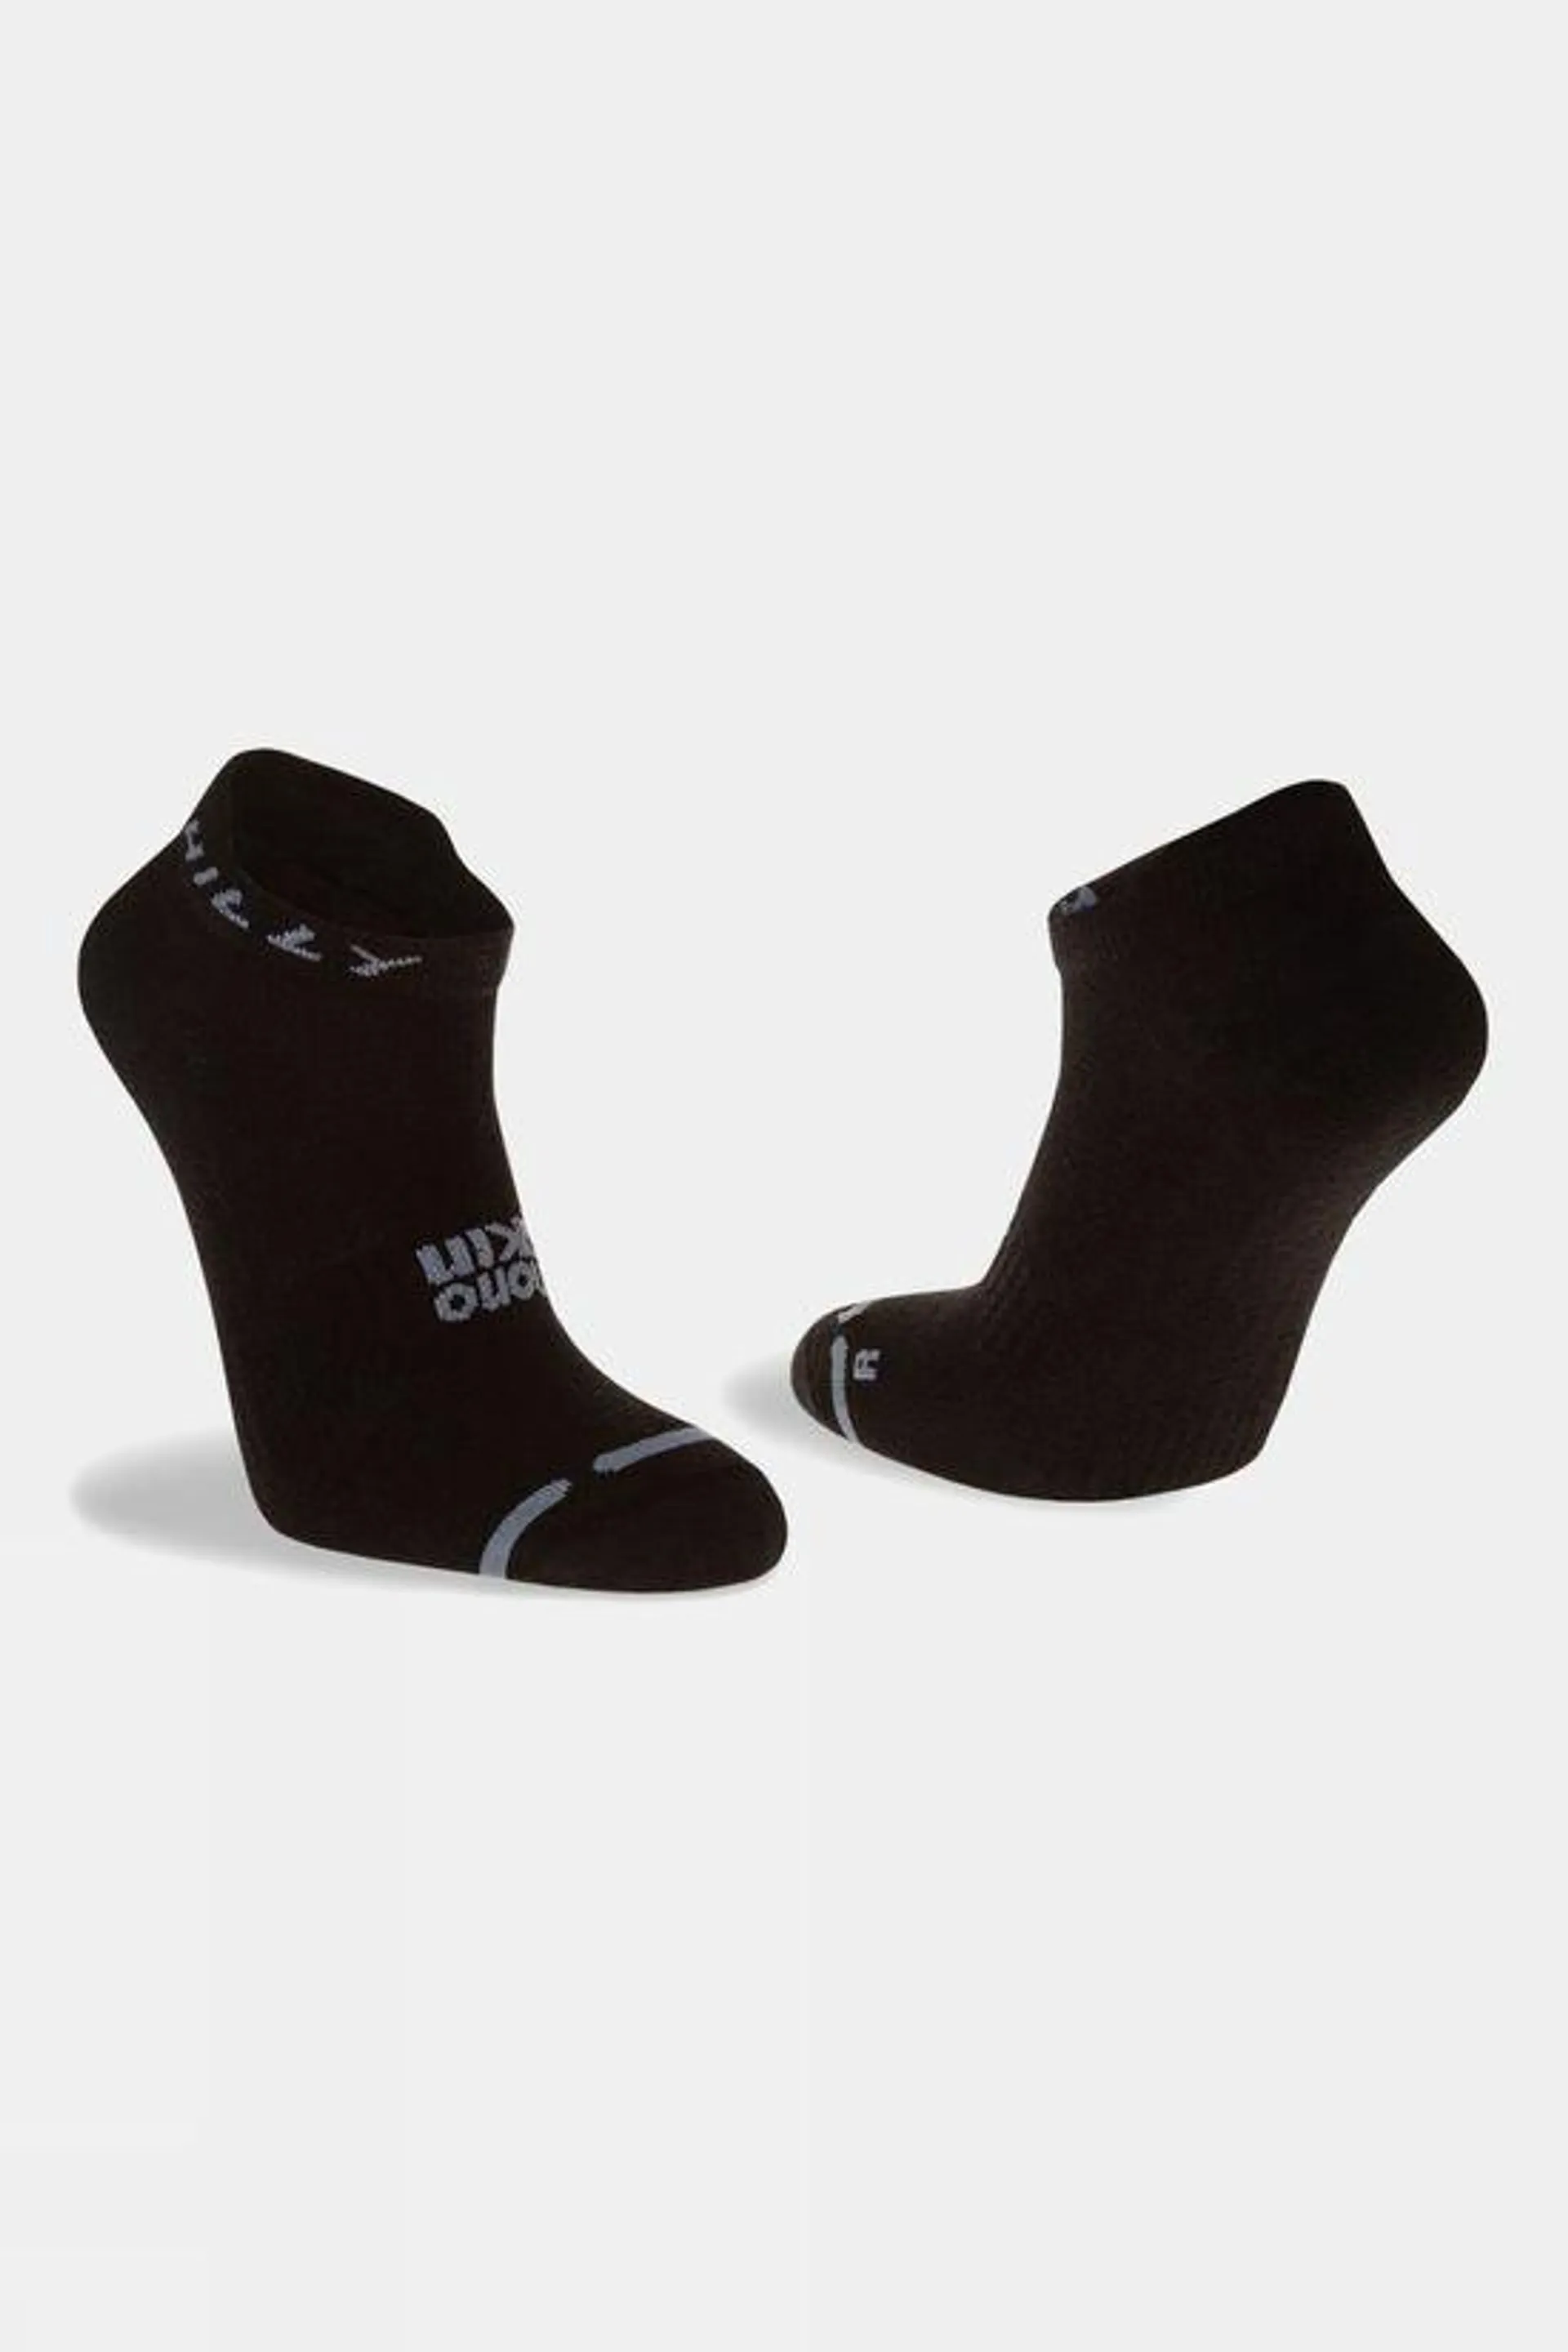 Unisex Active Socks